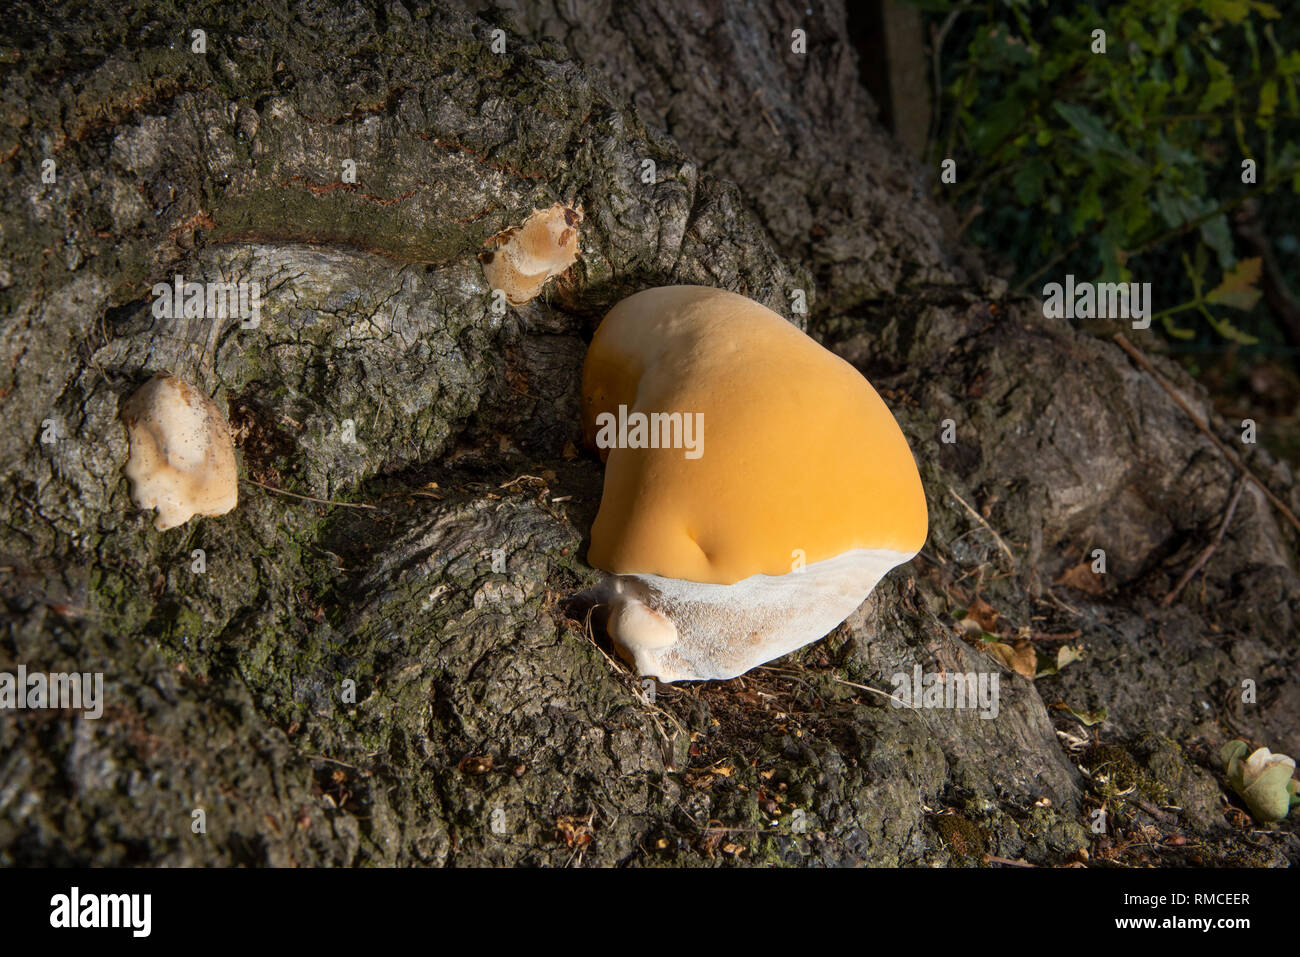 Fungal Foam on Tree Branch